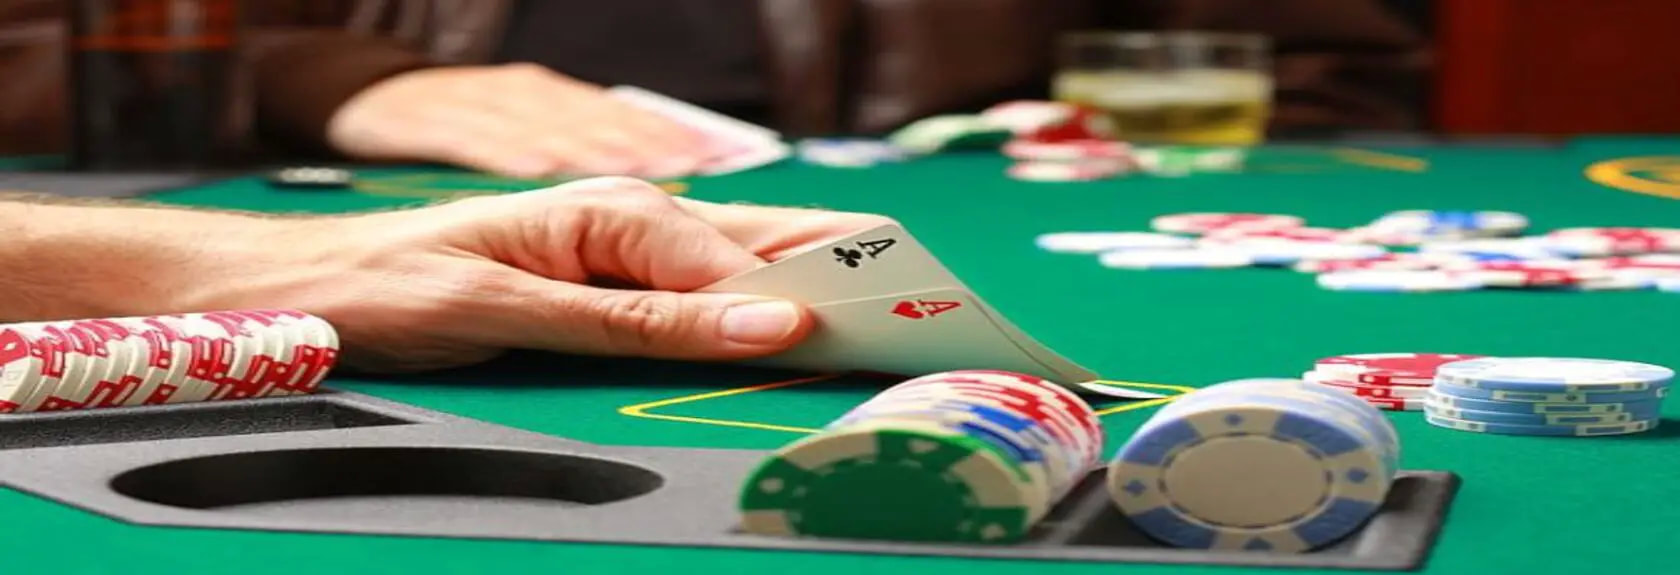 Os 4 melhores casinos de londres